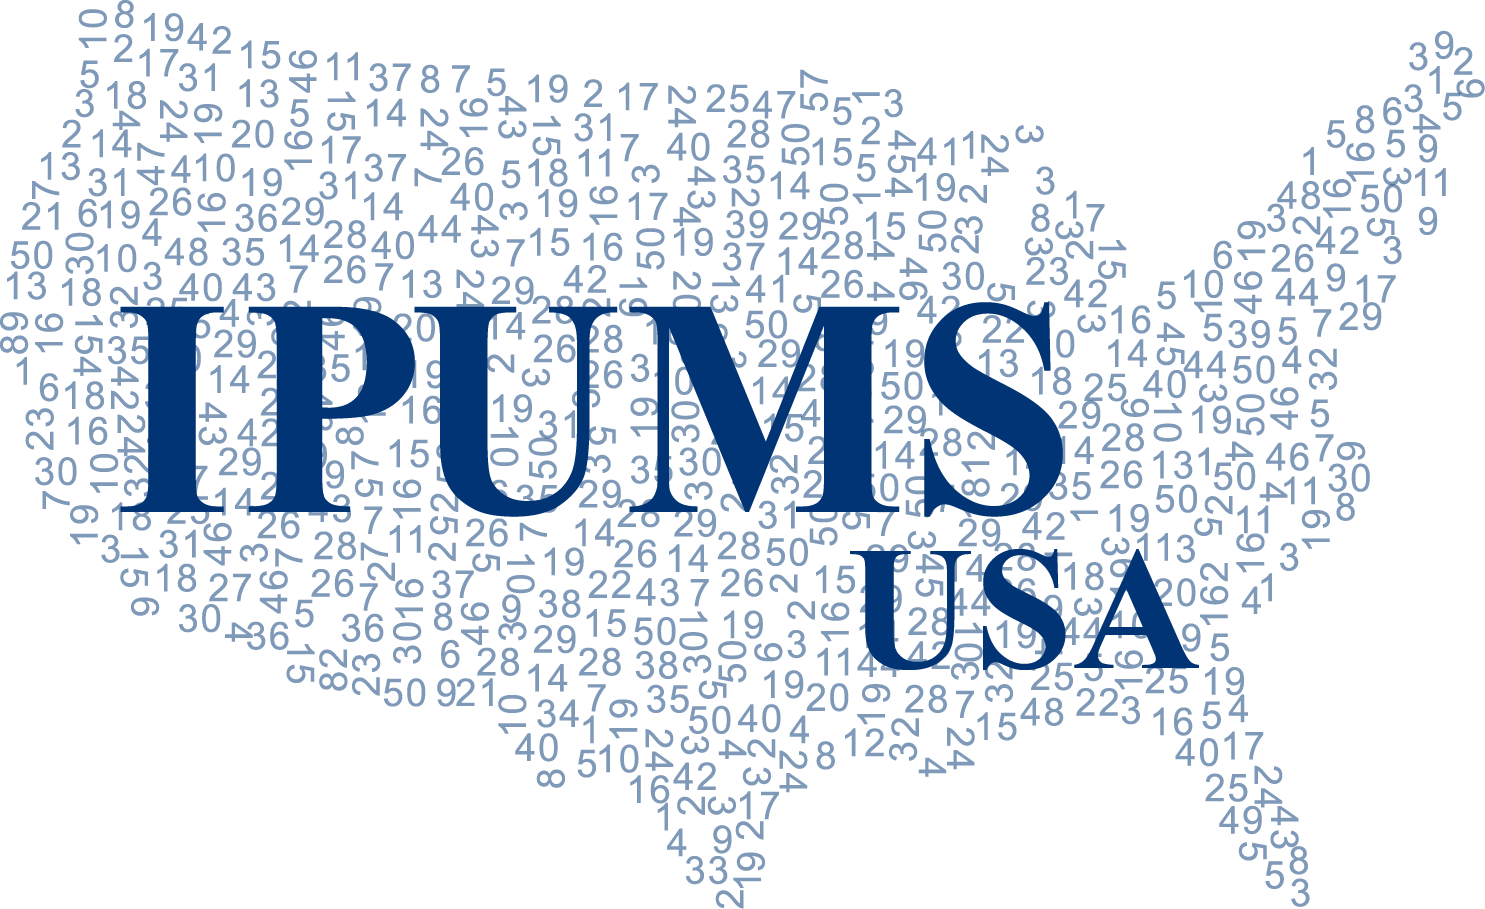 ipums-usa-logo